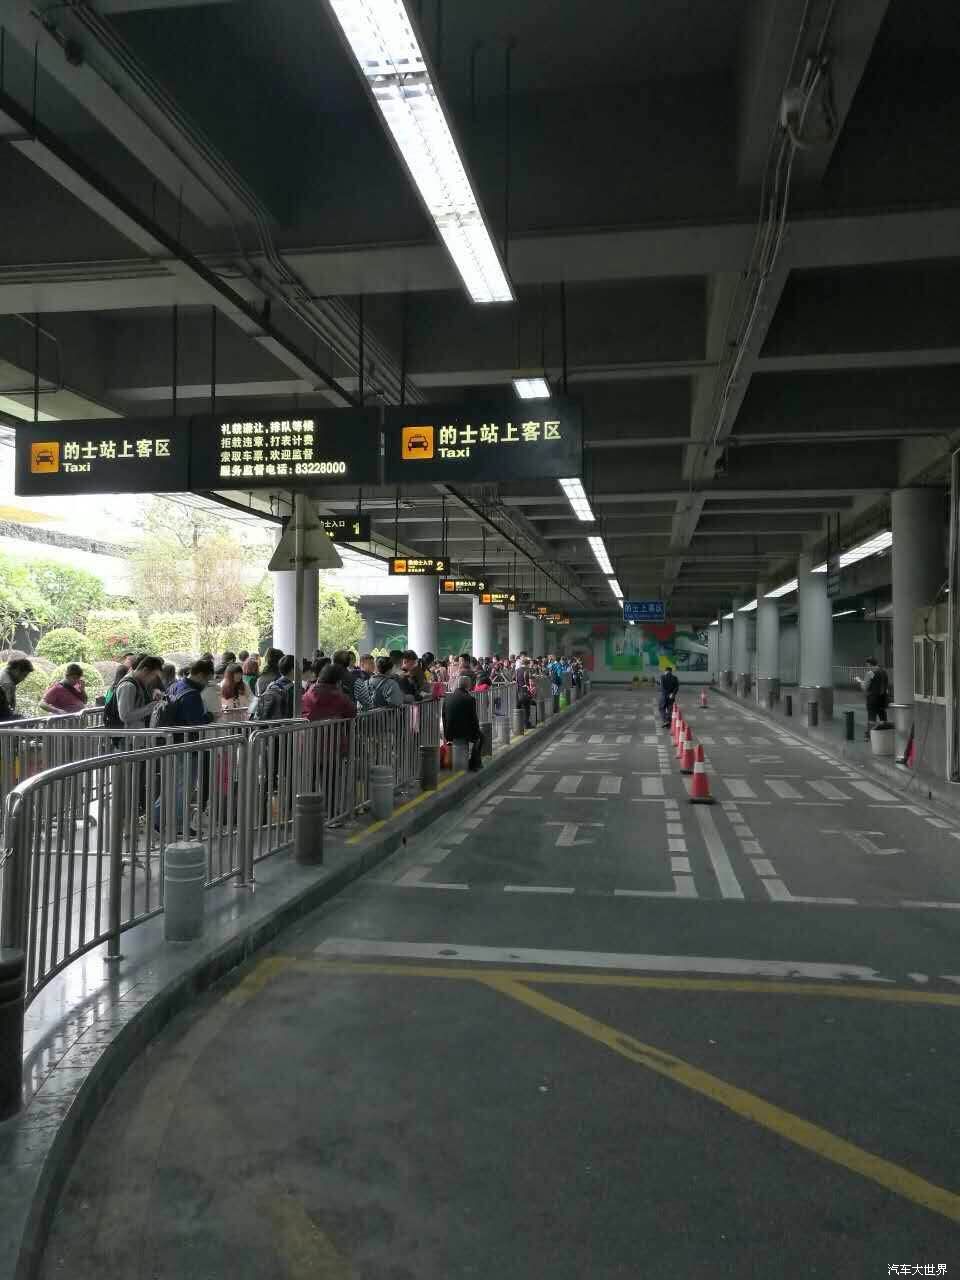 傳：深圳的士大范圍罷工 抵制專車